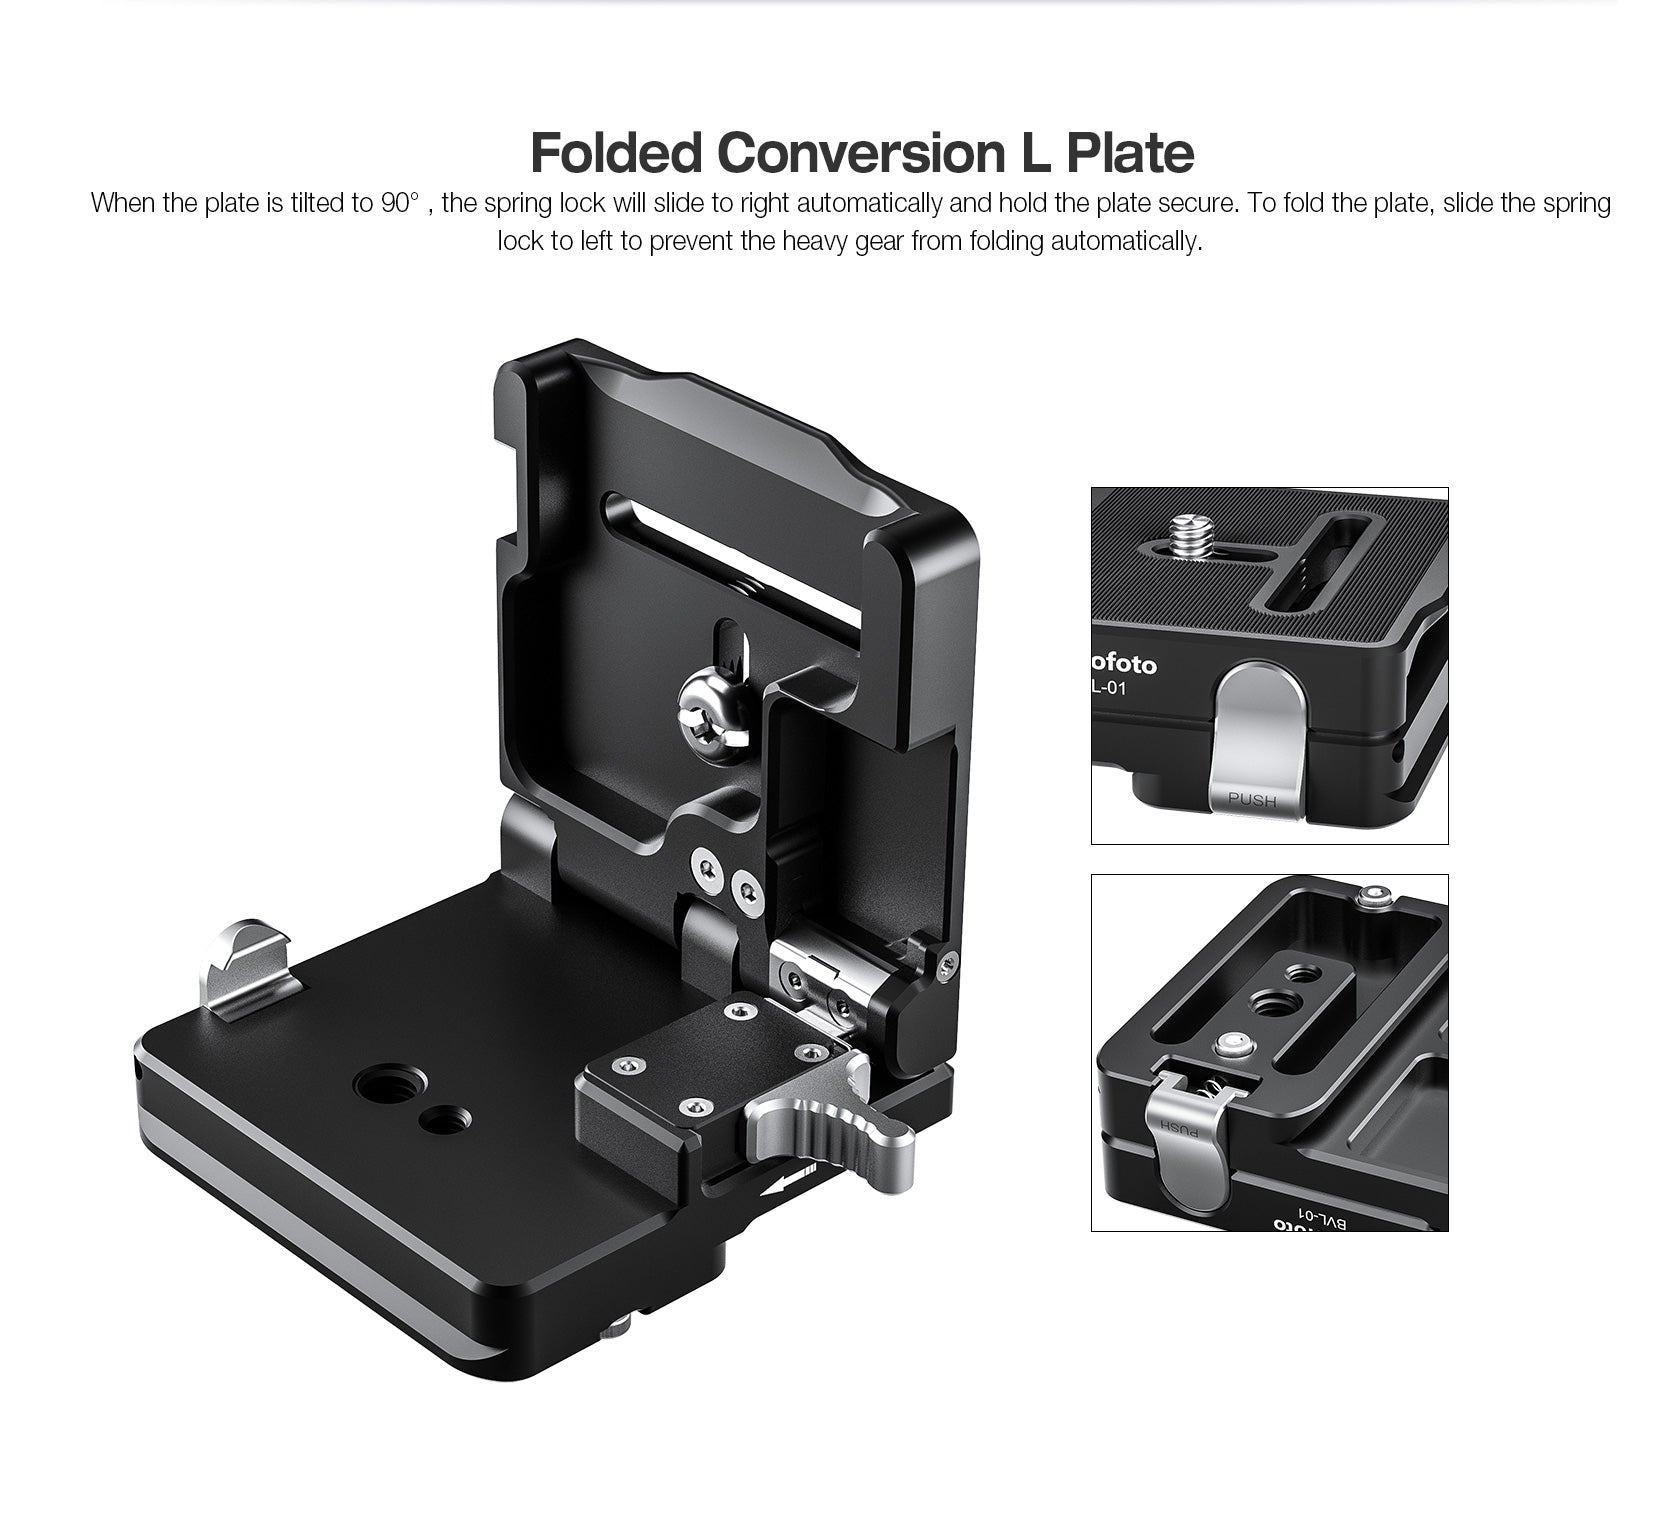 Leofoto BVL-01 Foldable Conversion L Plate | Arca Compatible